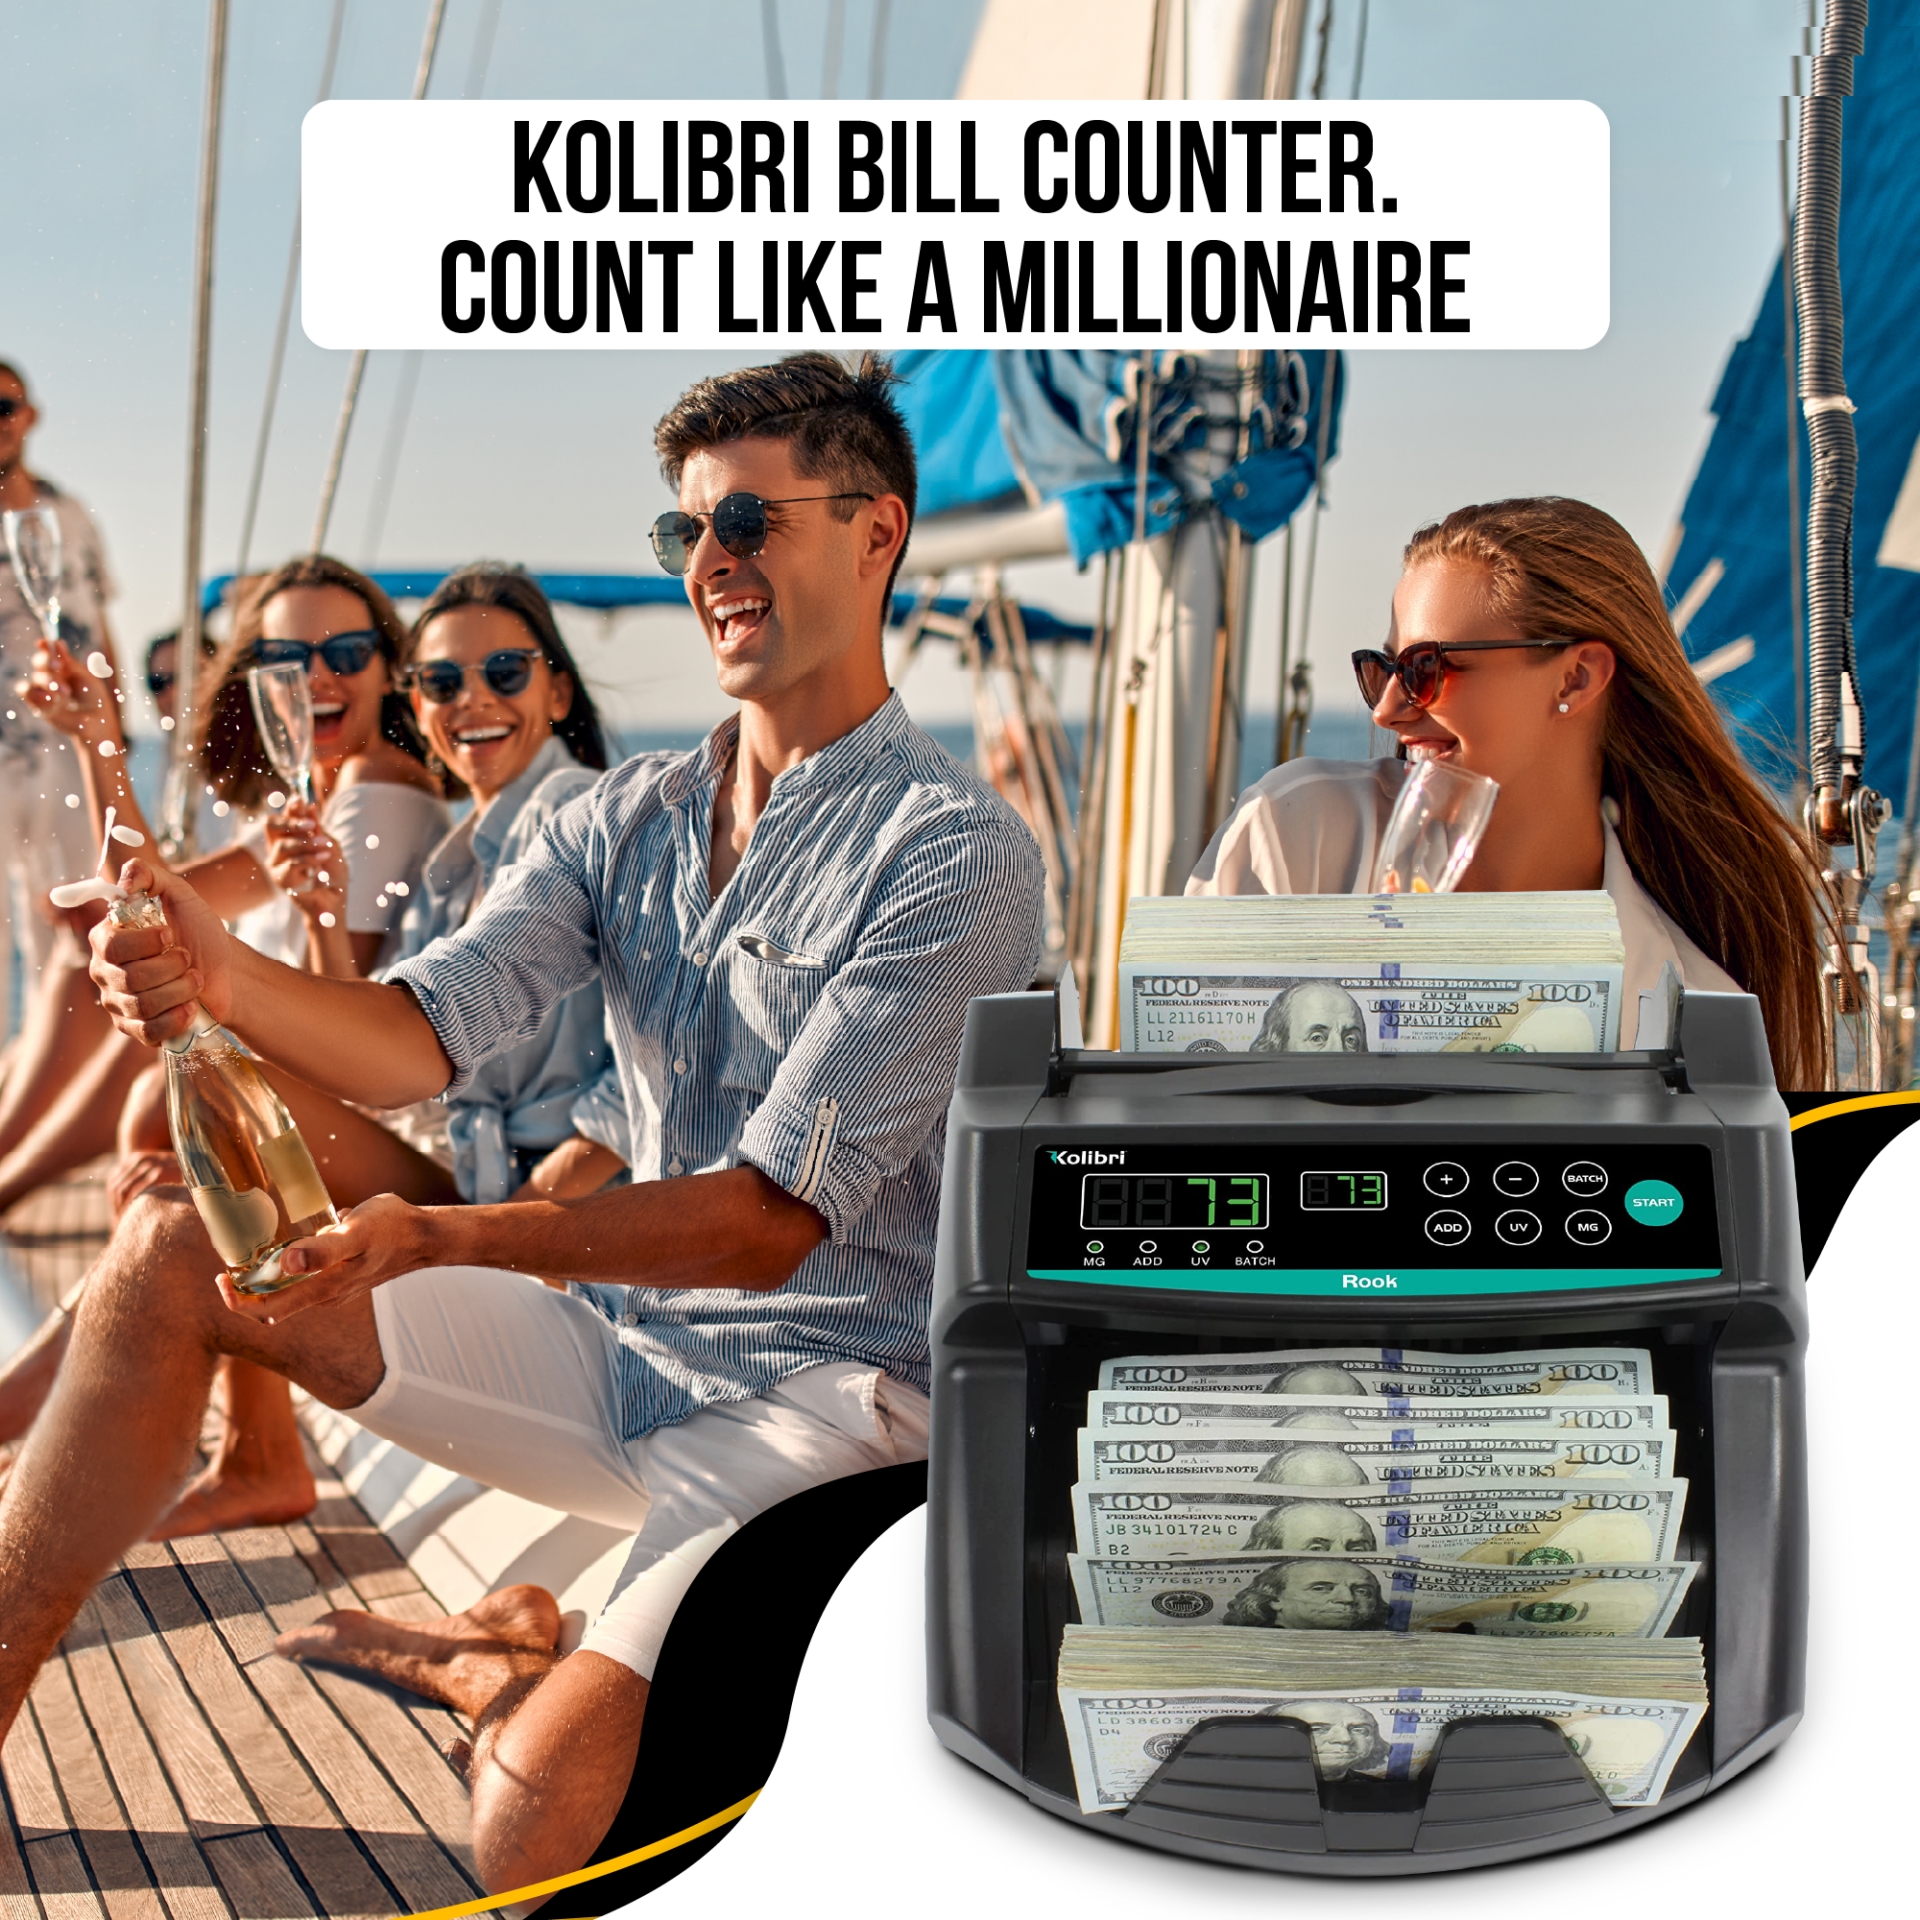 Kolibri Bill Counter. Count Like A Millionaire